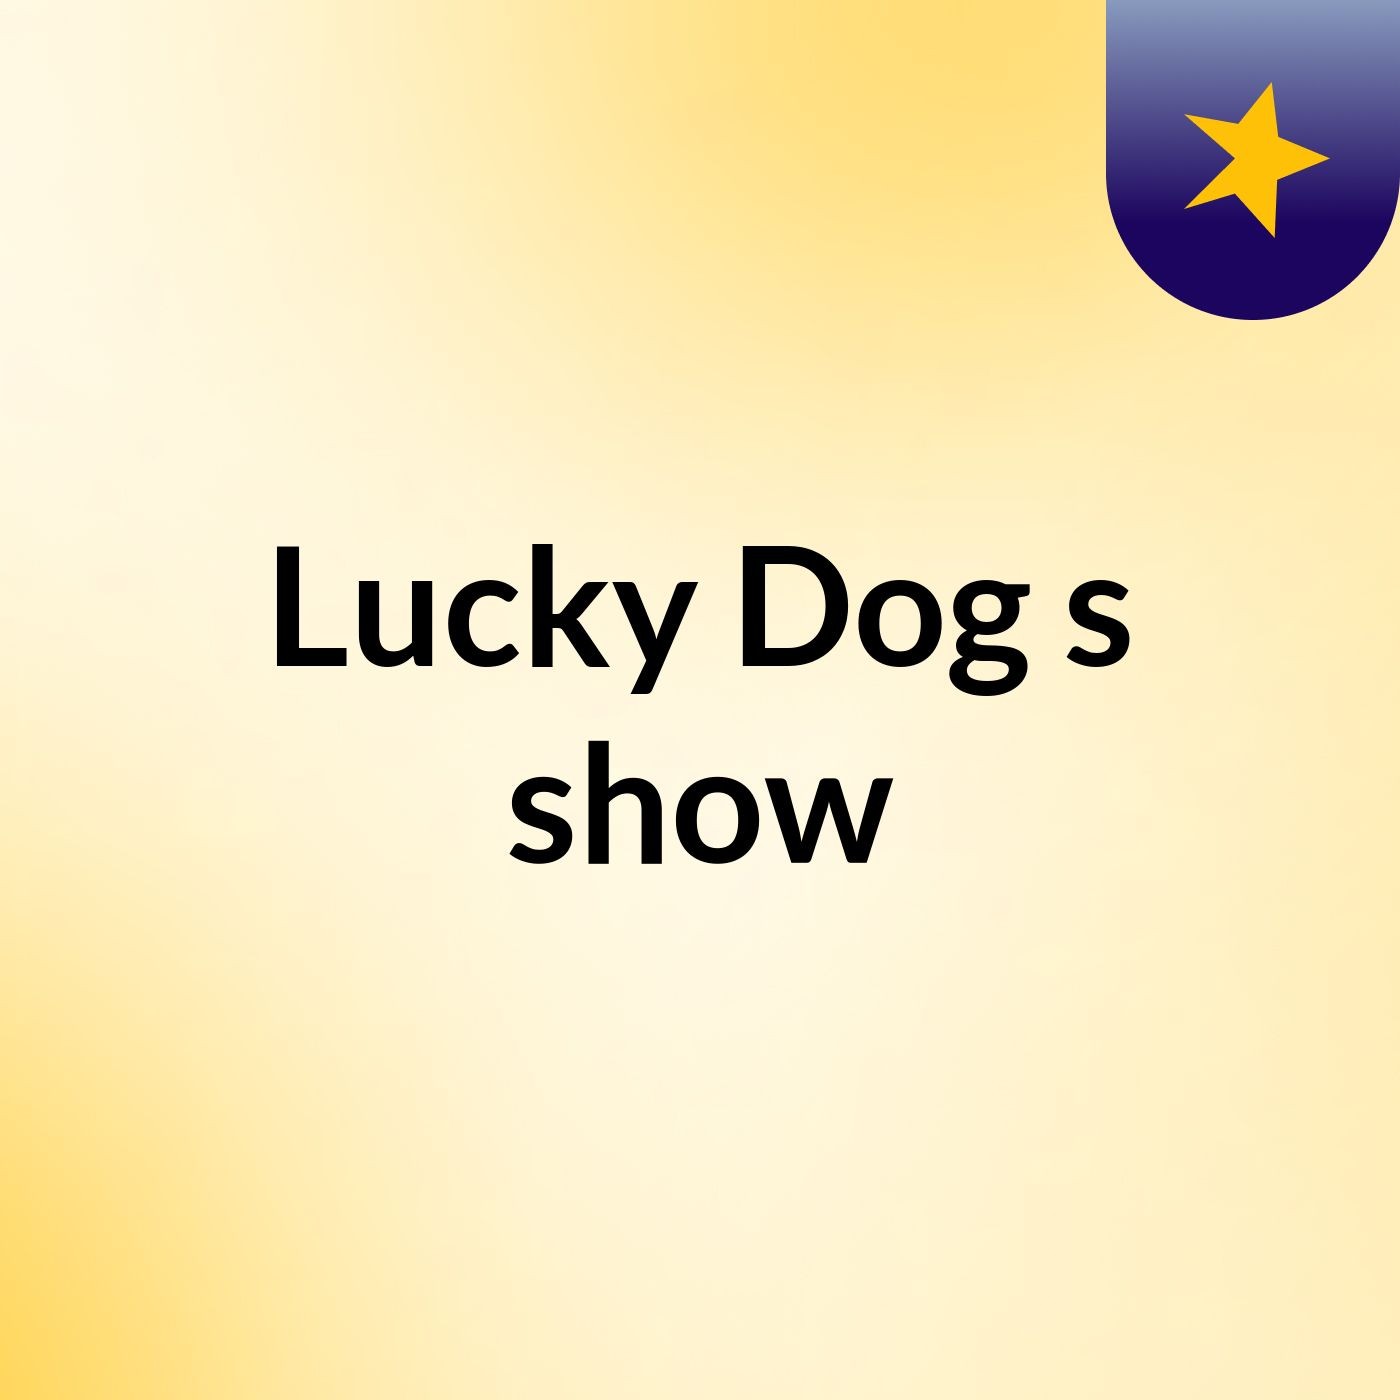 Lucky Dog's show